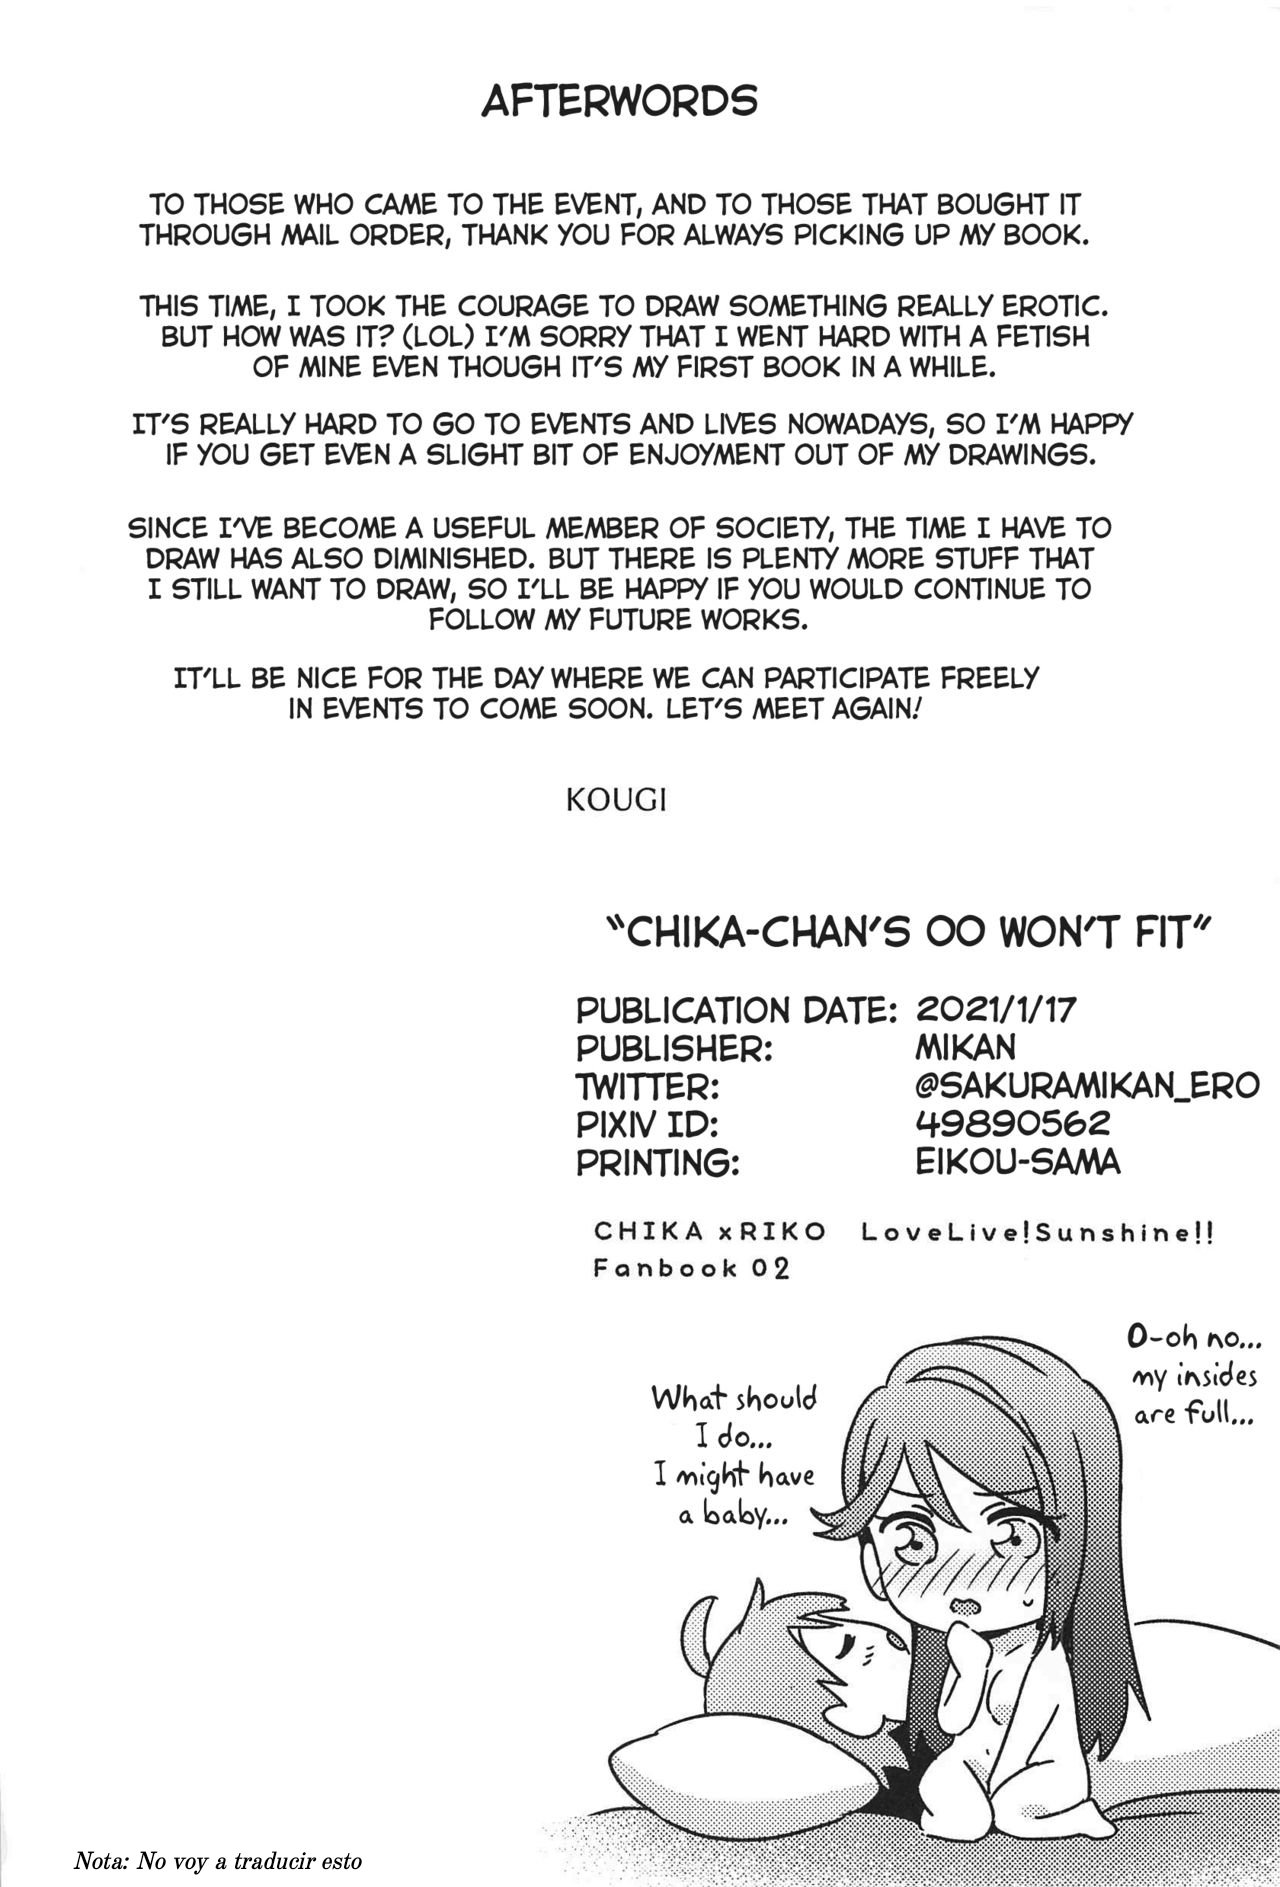 Chika-chan no ga Hairanai Chika-chans Wont Fit - 32